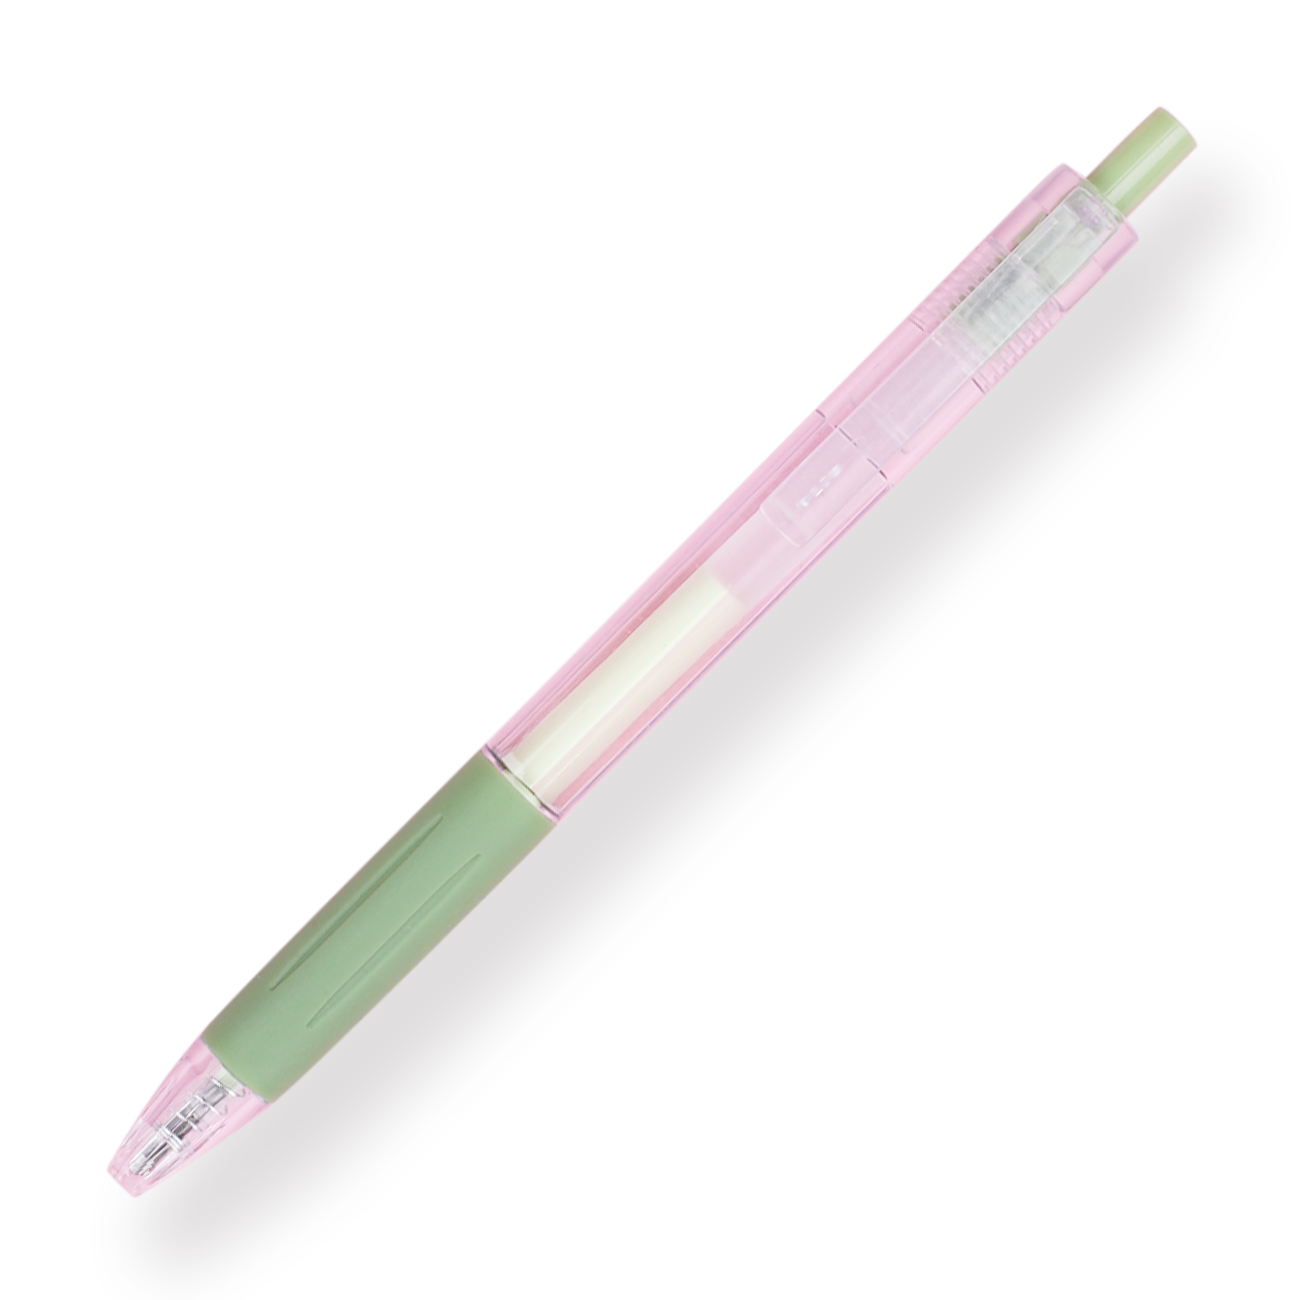 Minimalist Glue Pen - Green